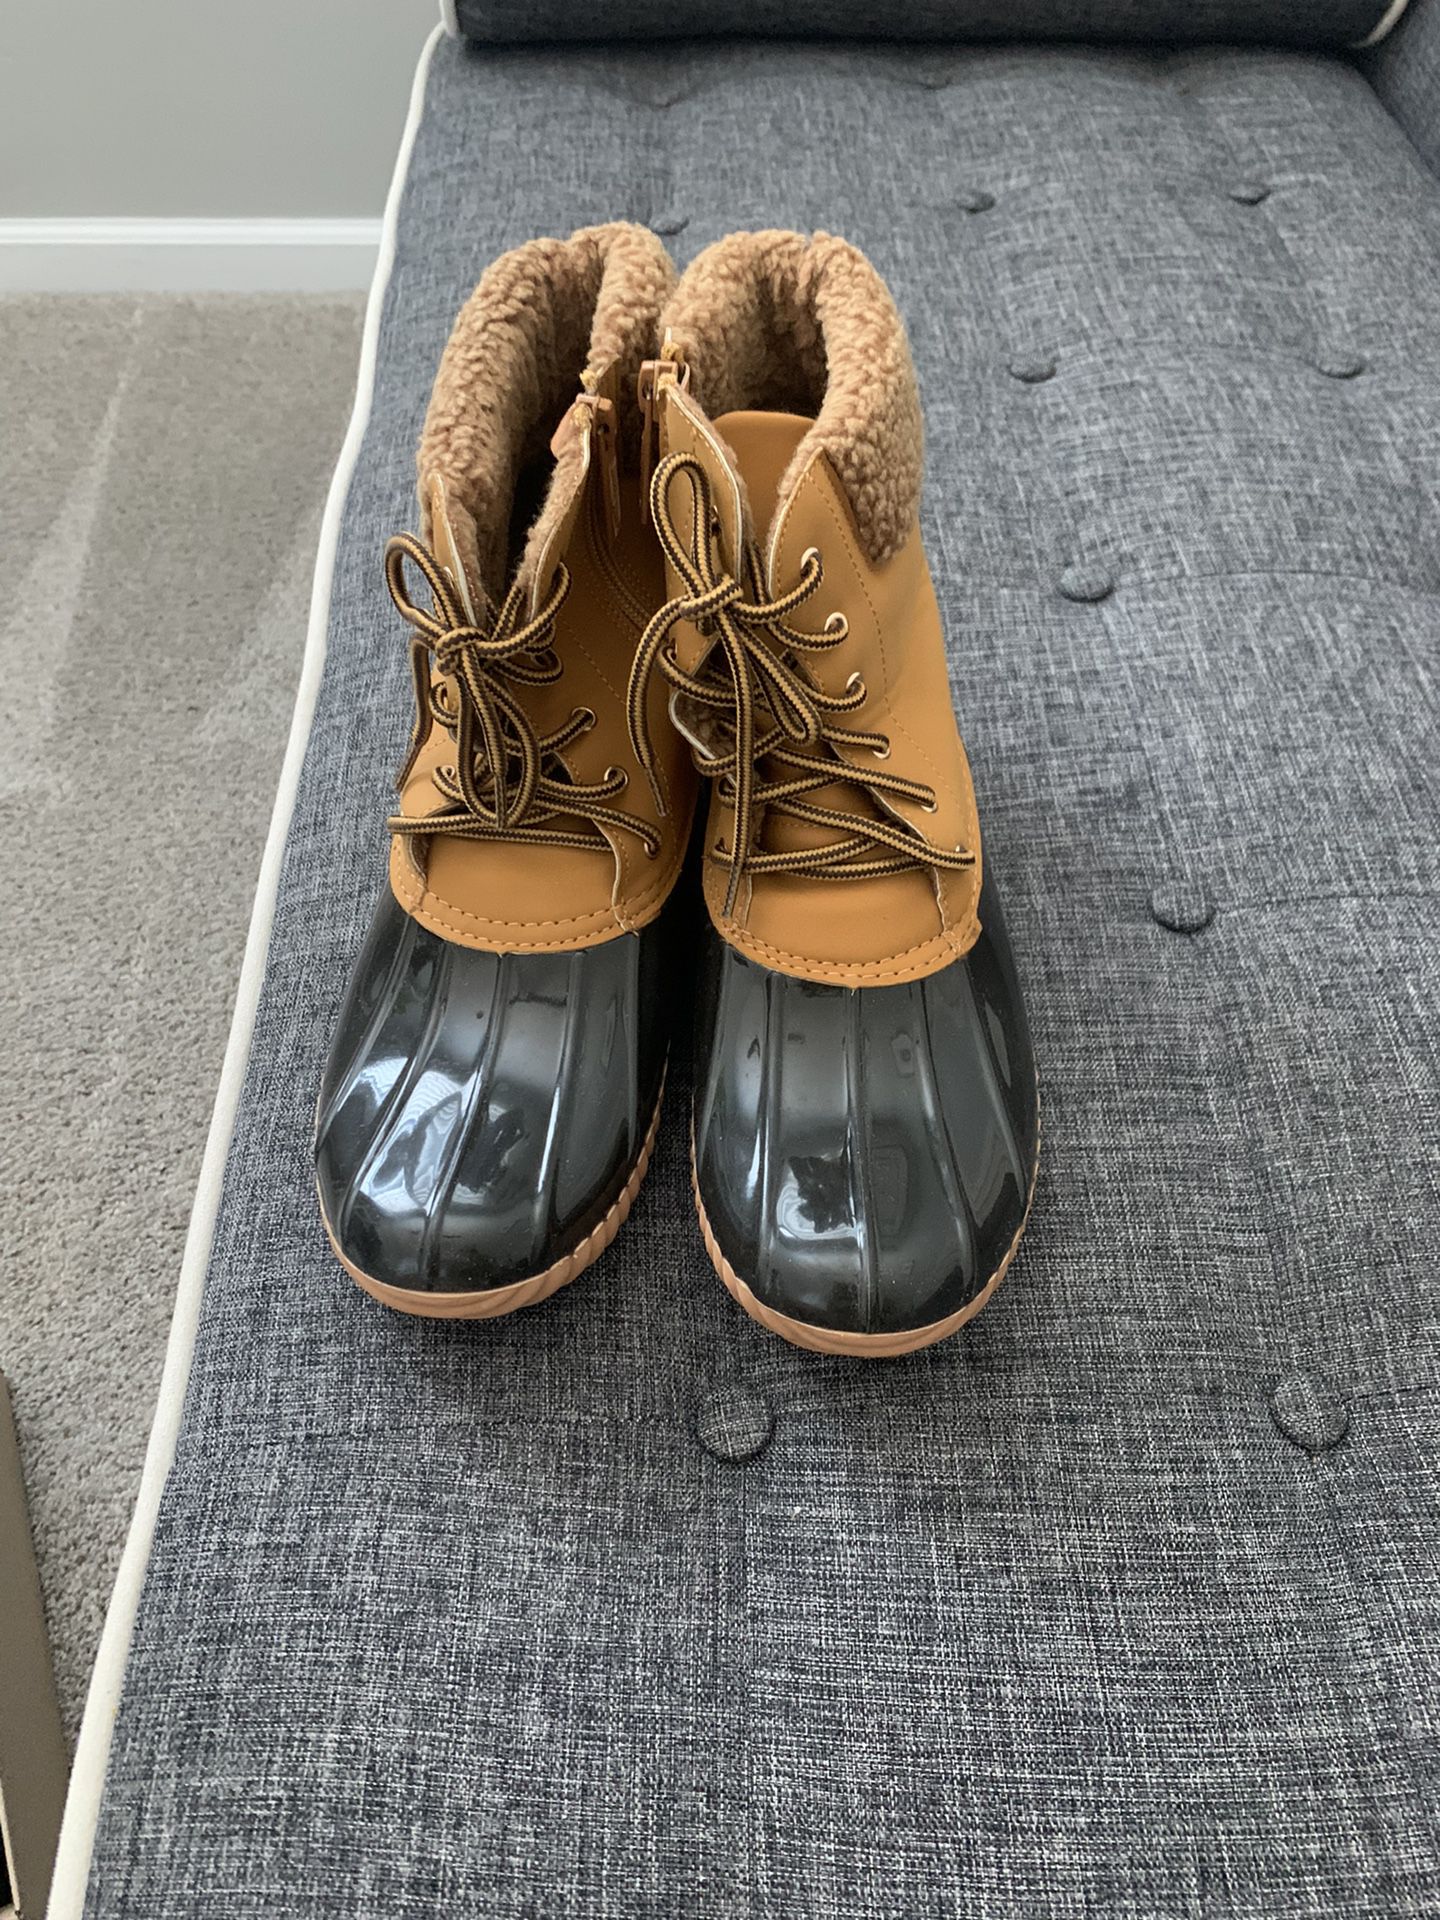 Warm Waterproof Boots 